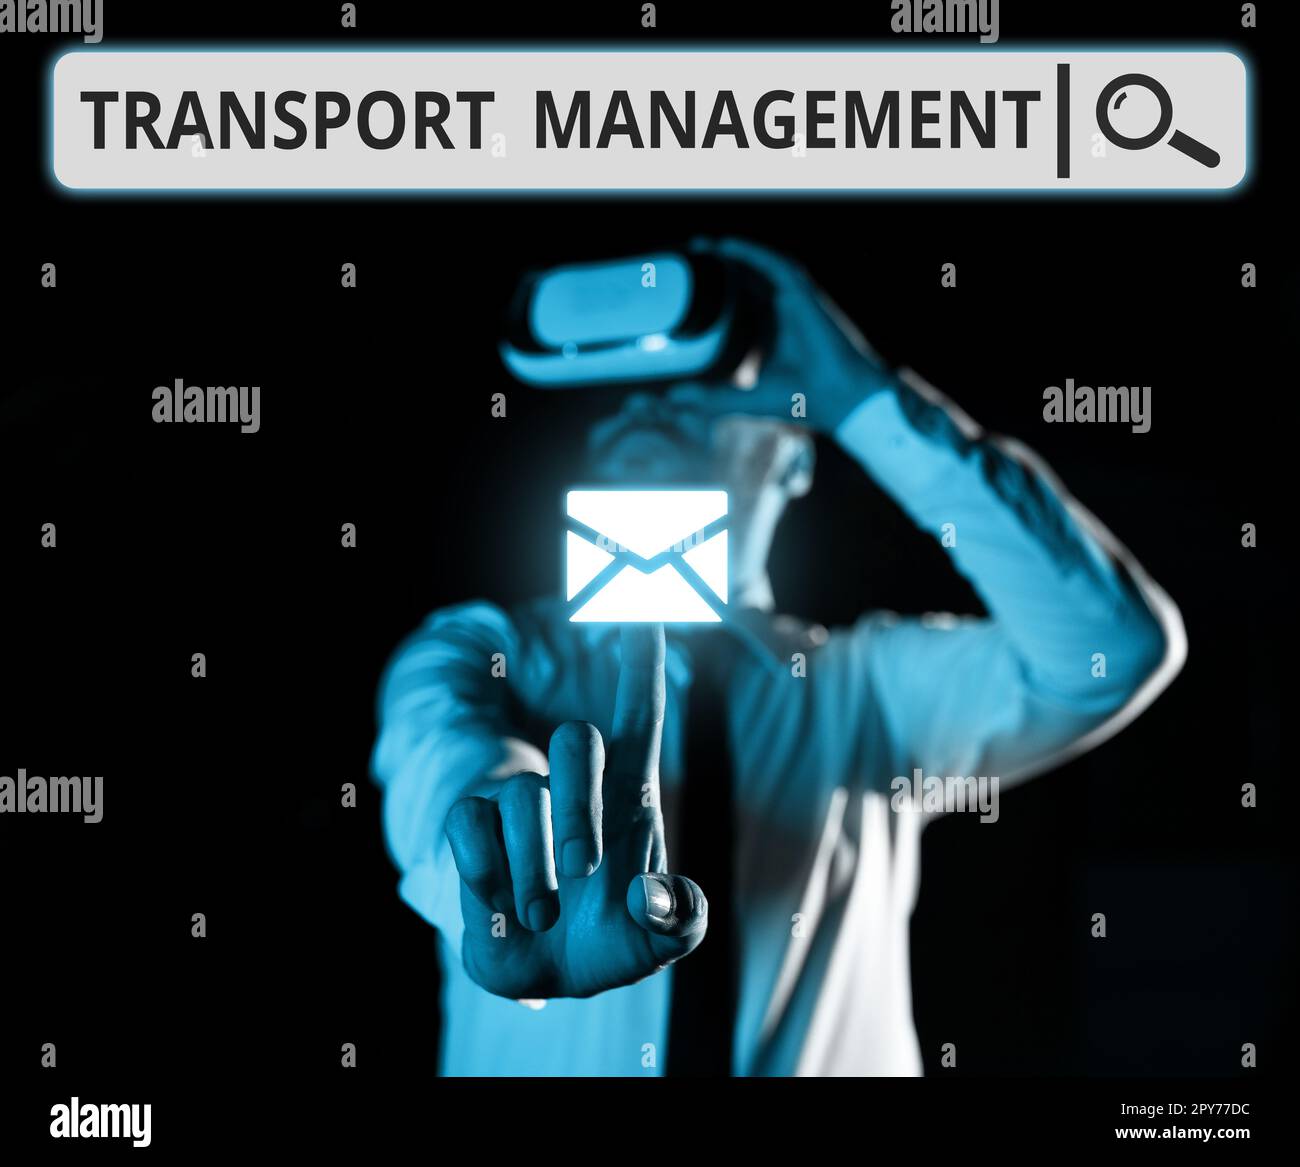 Handschriftlicher Text Transport Management. Konzeptioneller Aspekt des Fotomanagements bei der Fahrzeugwartung und -Bedienung Stockfoto